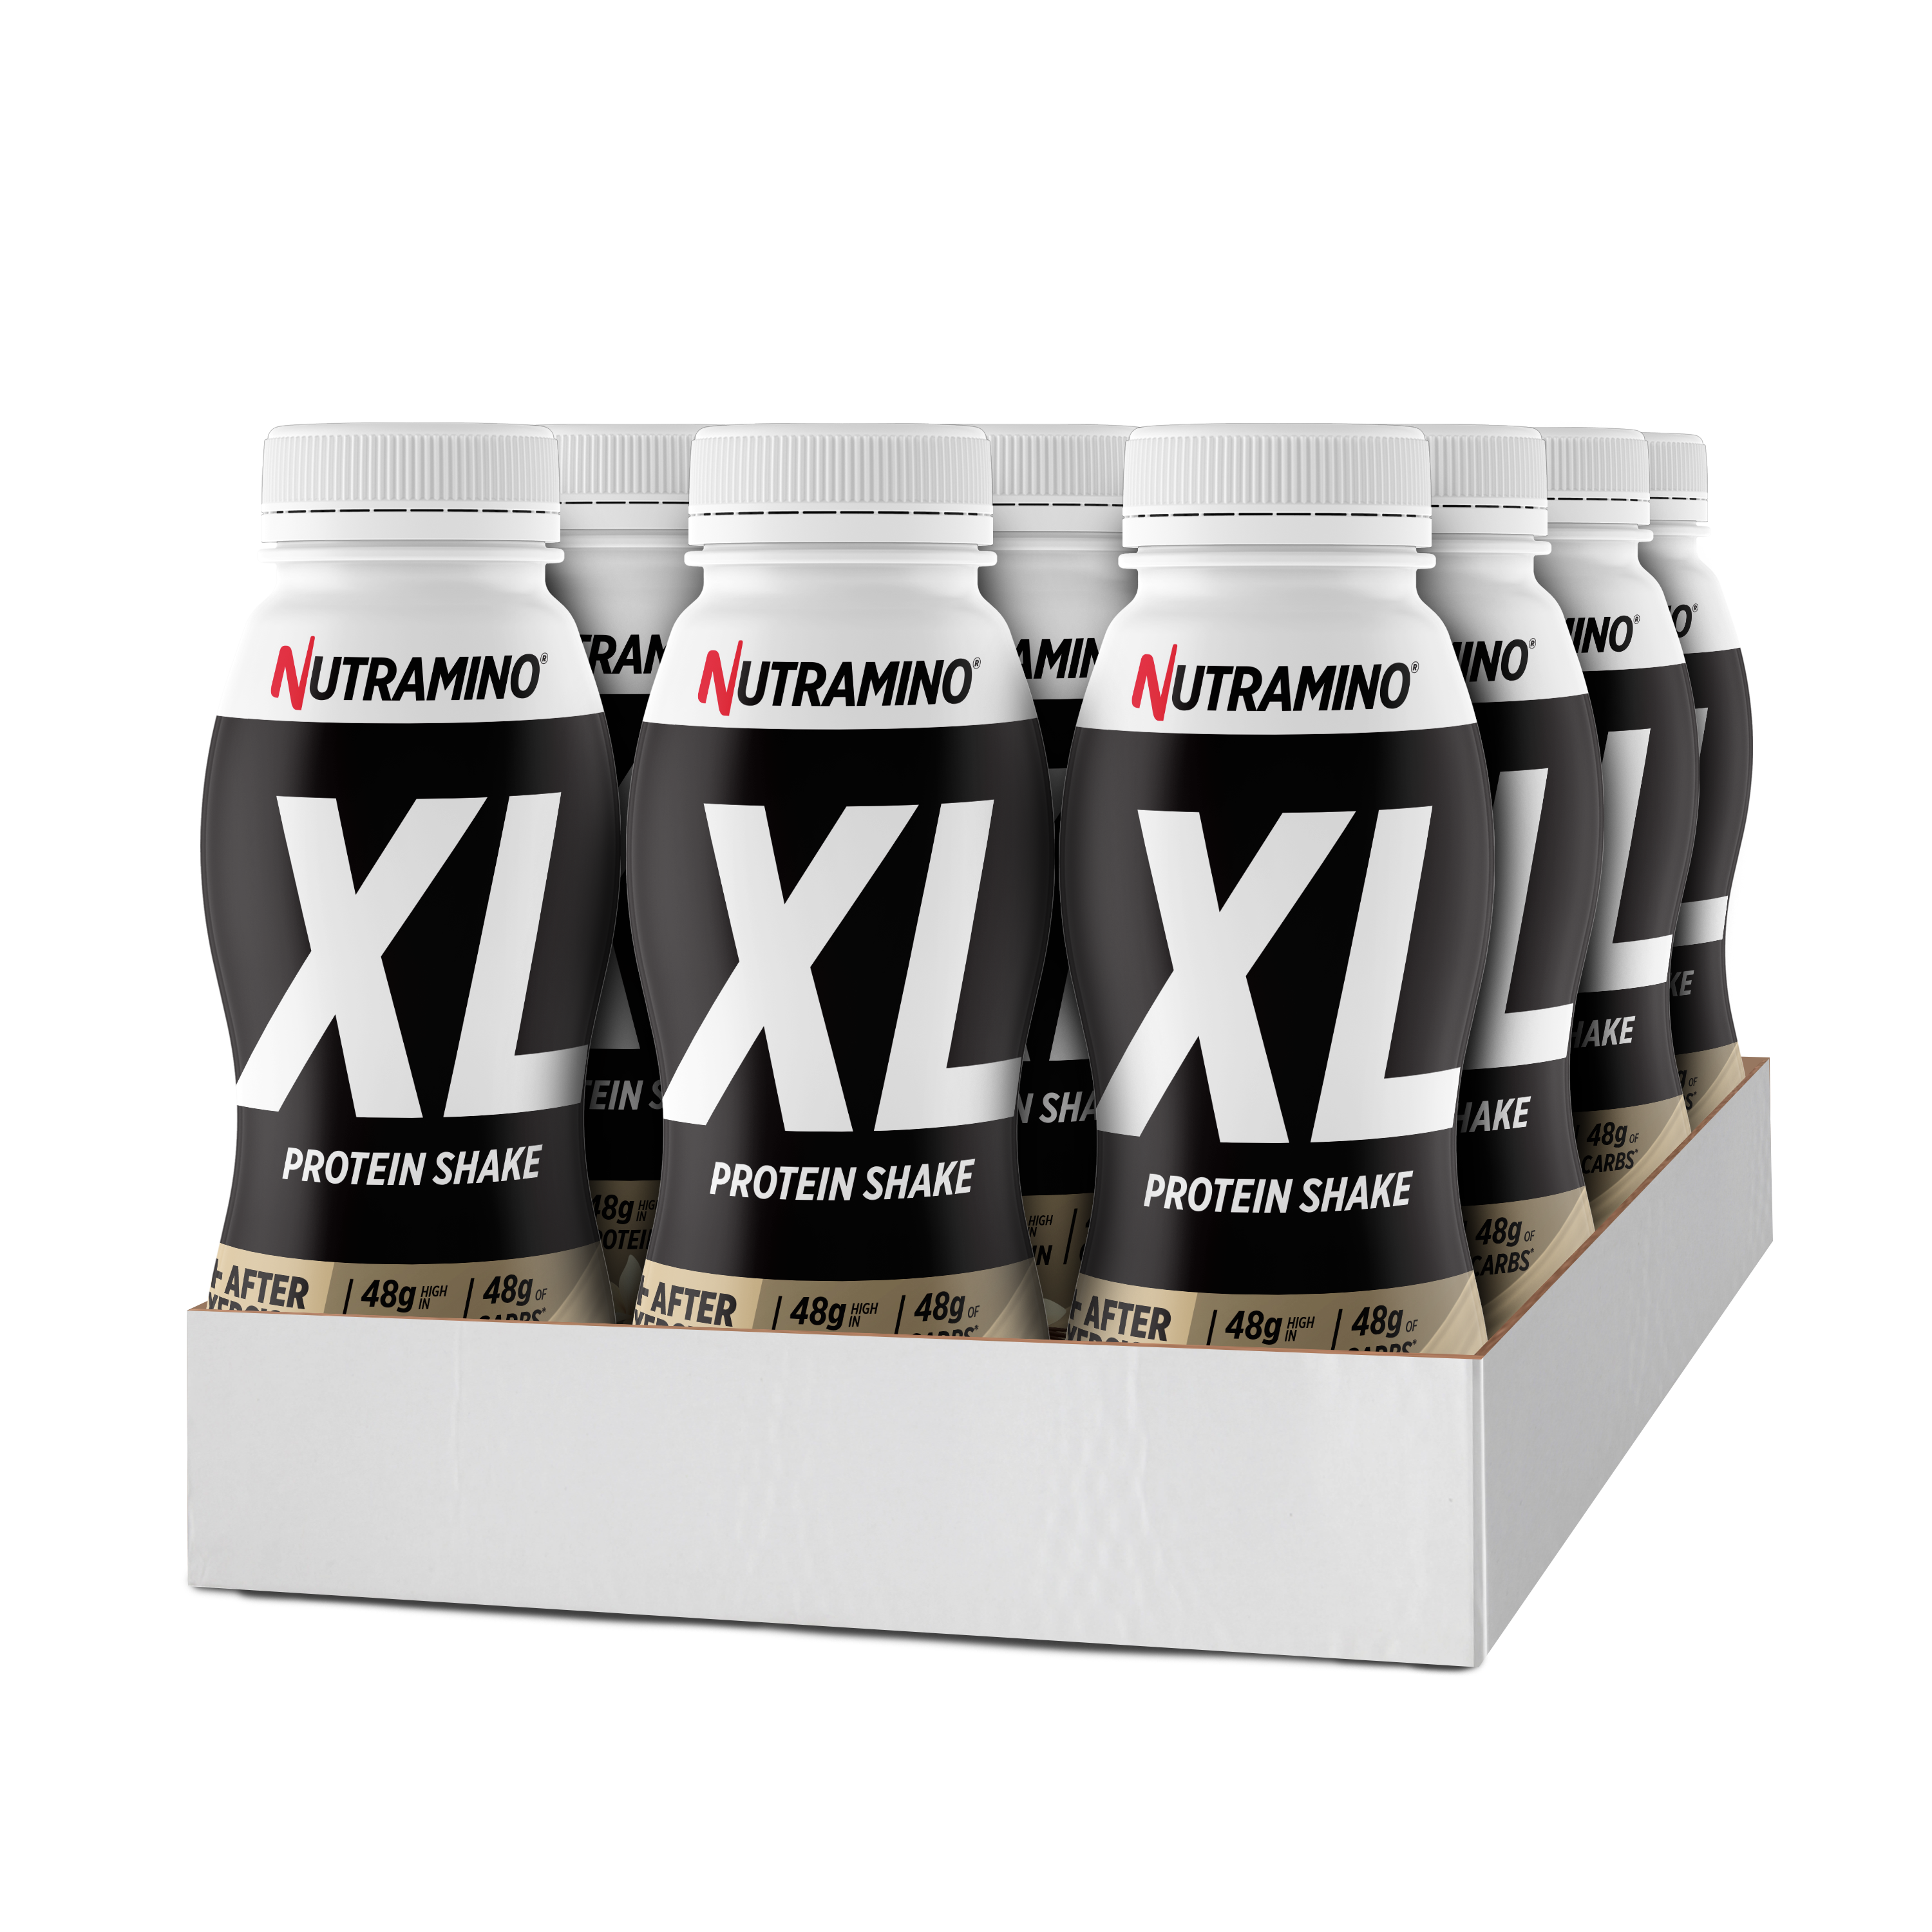 Billede af Nutramino XL Protein Shake - Vanilla (12x 475ml)